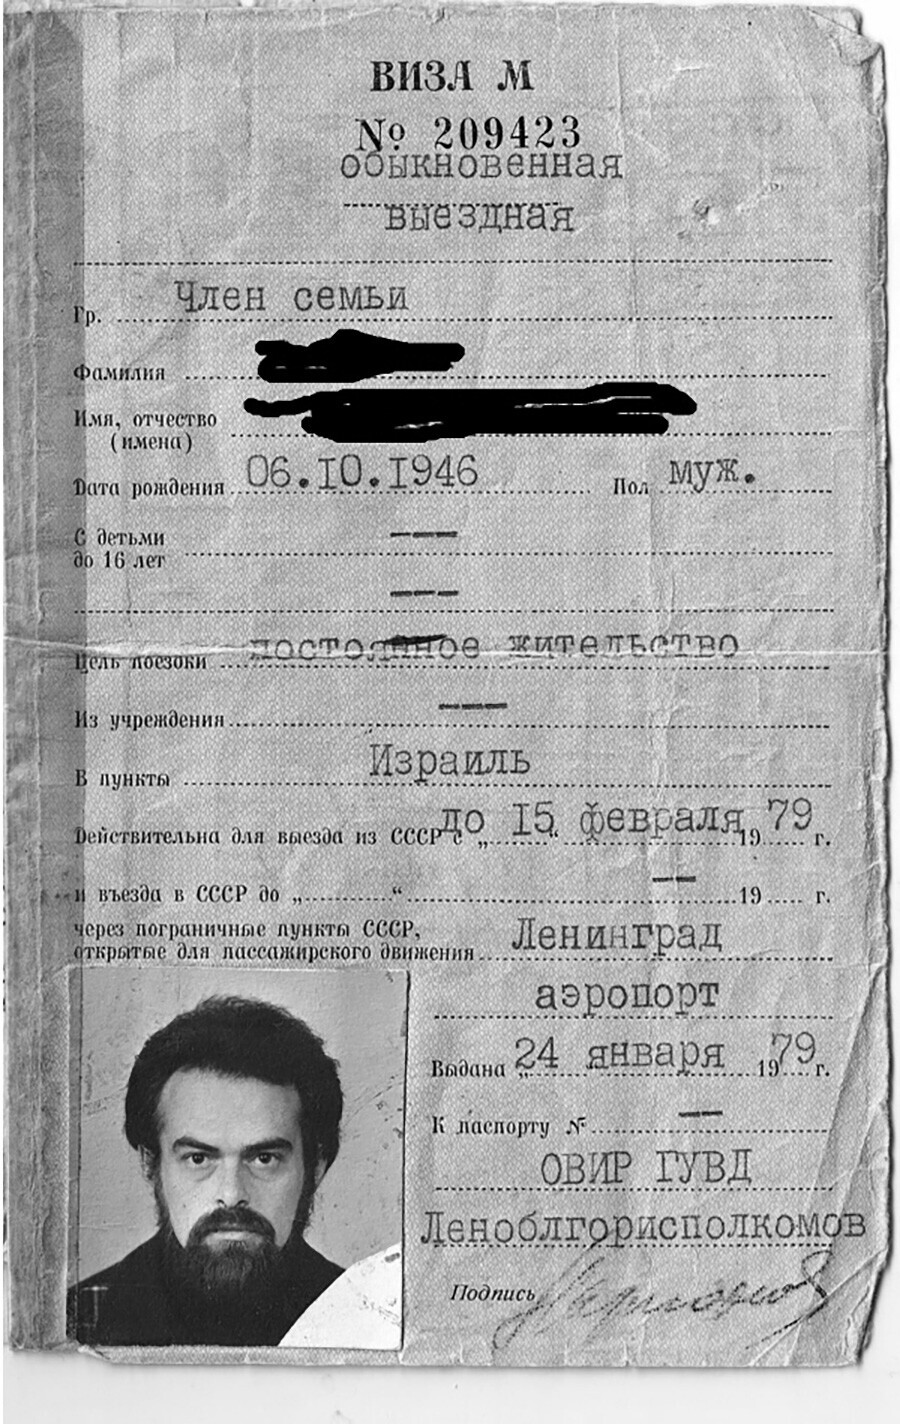 Sovjetska izstopna viza druge vrste (ki omogoča dokončen izstop iz ZSSR).
